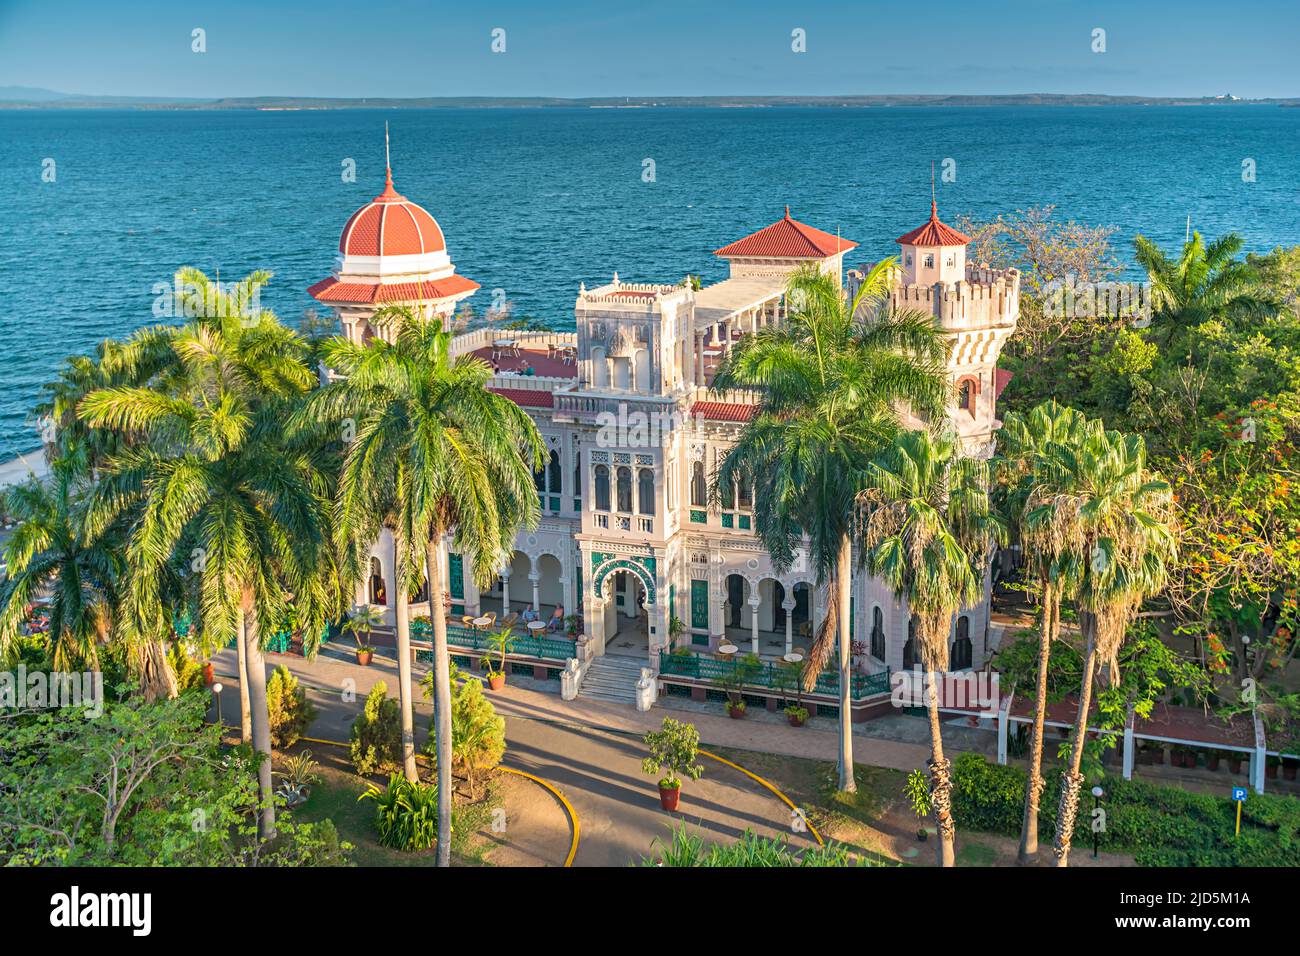 Vue panoramique sur le magnifique Palacio de Valle à Cienfuegos, Cuba Banque D'Images